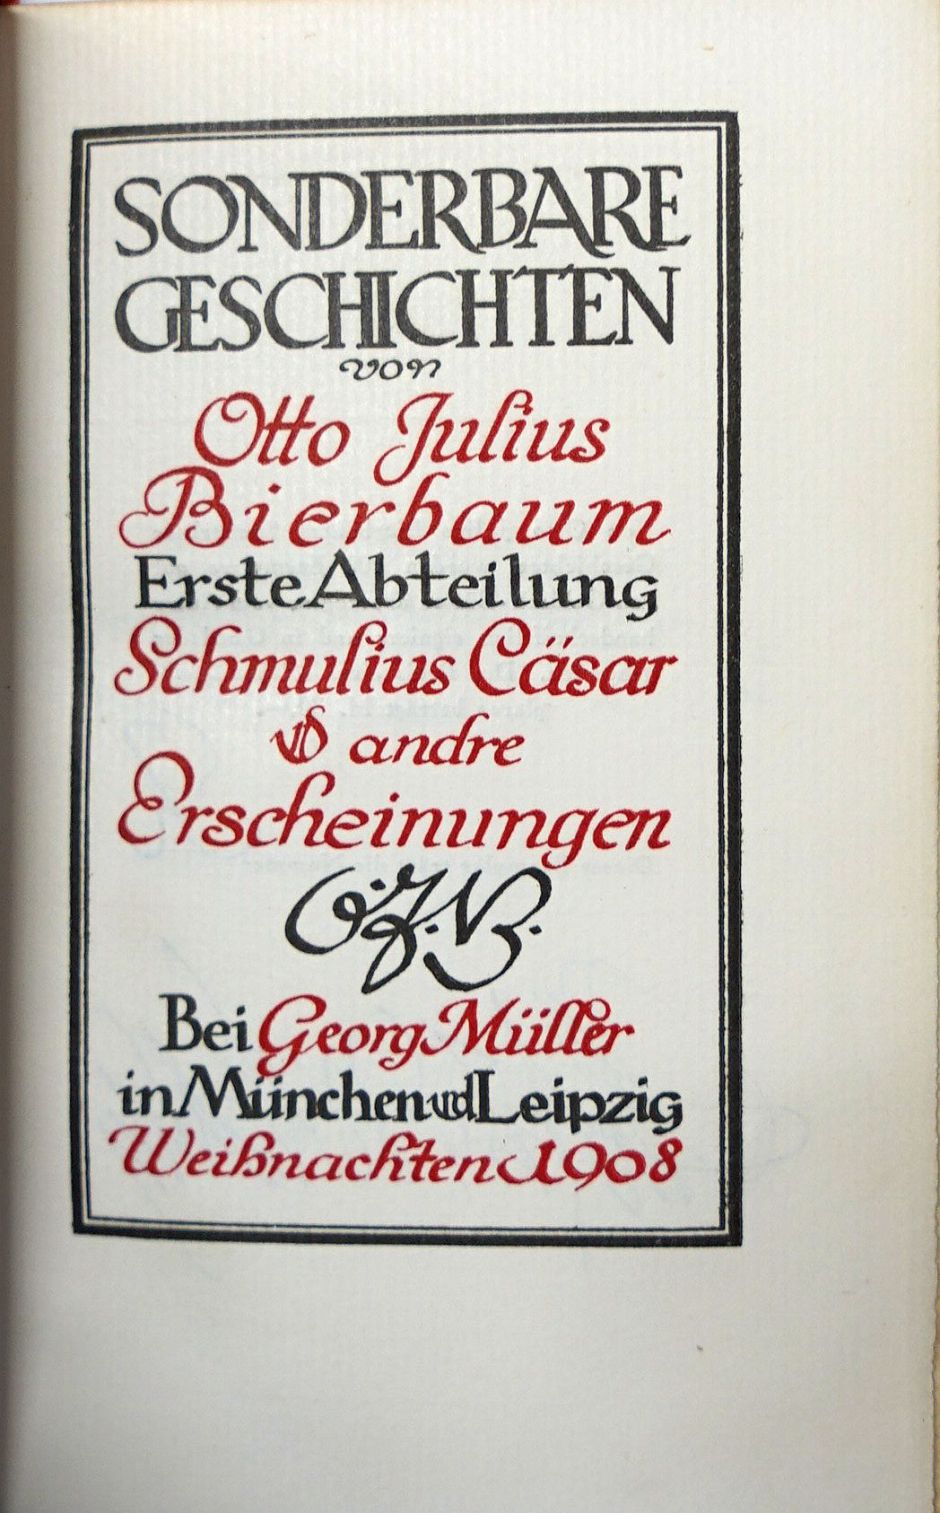 Lot 3023, Auction  115, Bierbaum, Otto Julius, Sonderbare Geschichten